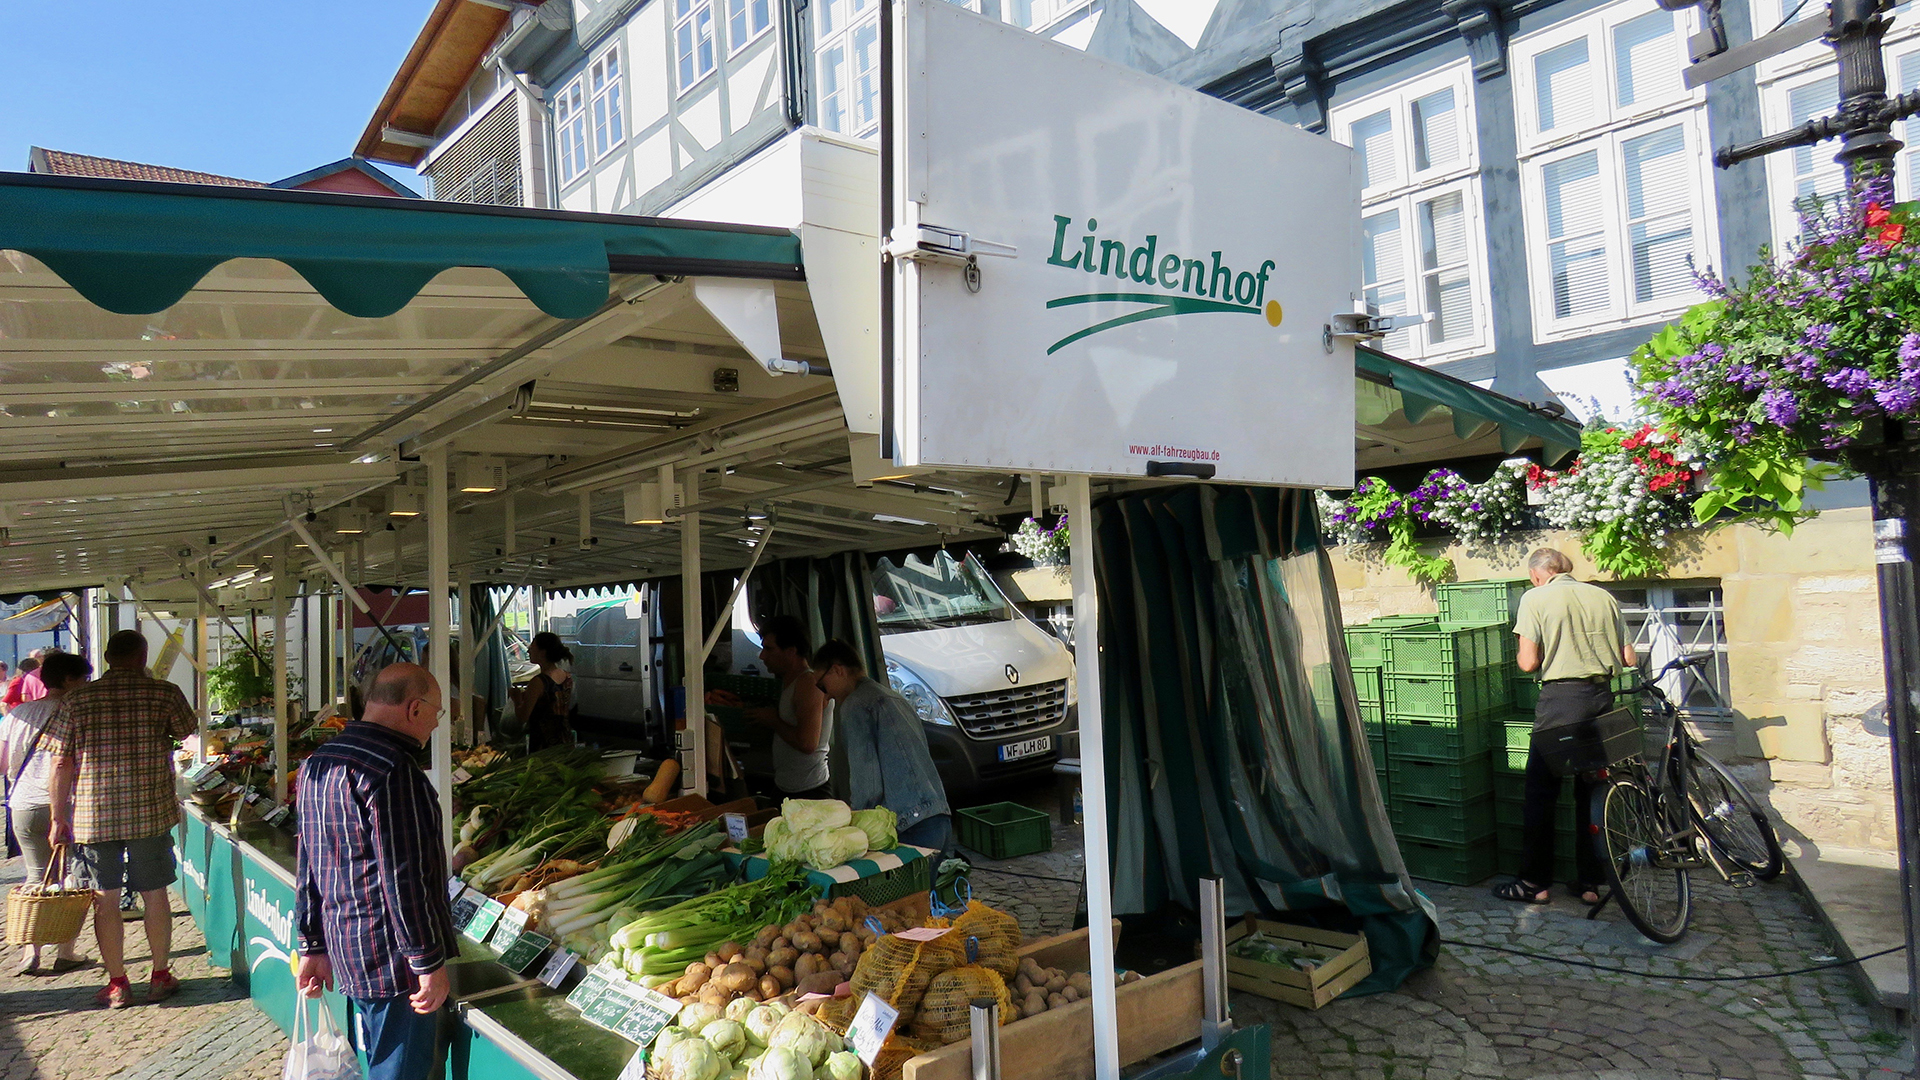 Auslage an einem Verkaufsstand auf dem Wolfenbütteler Markt mit verschiedenen Gemüsesorten. Am Stand ein Schild mit der Aufschrift "Lindenhof".